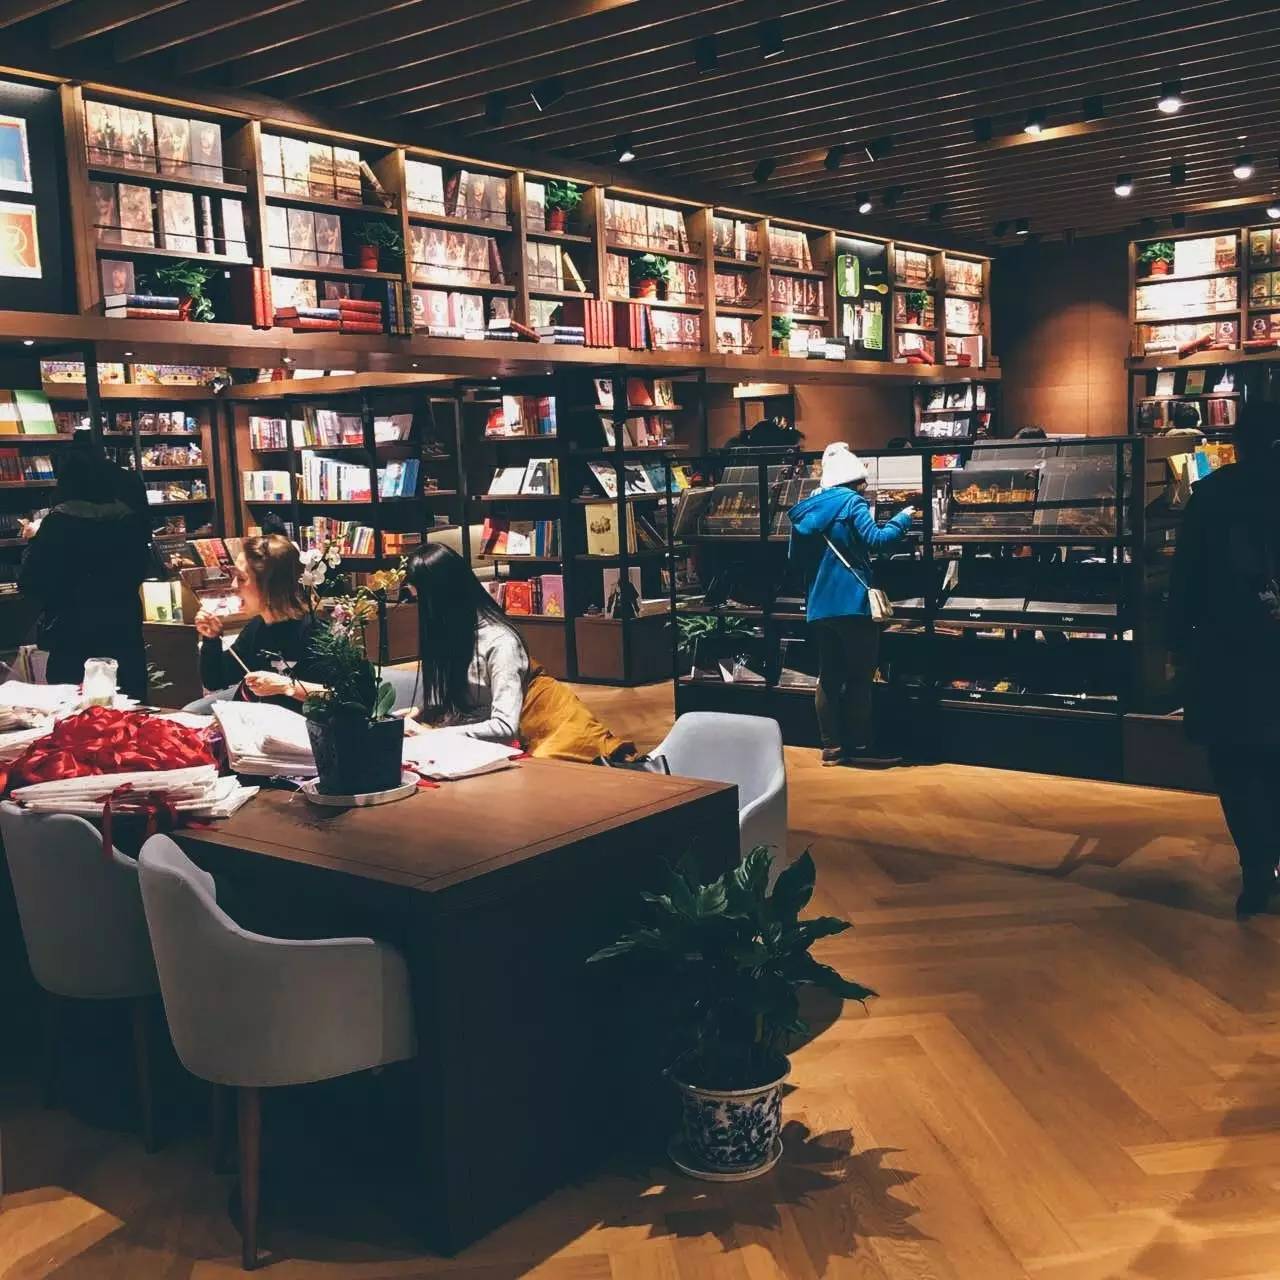 日本最美书店茑屋在南京设计了一个书店,带你